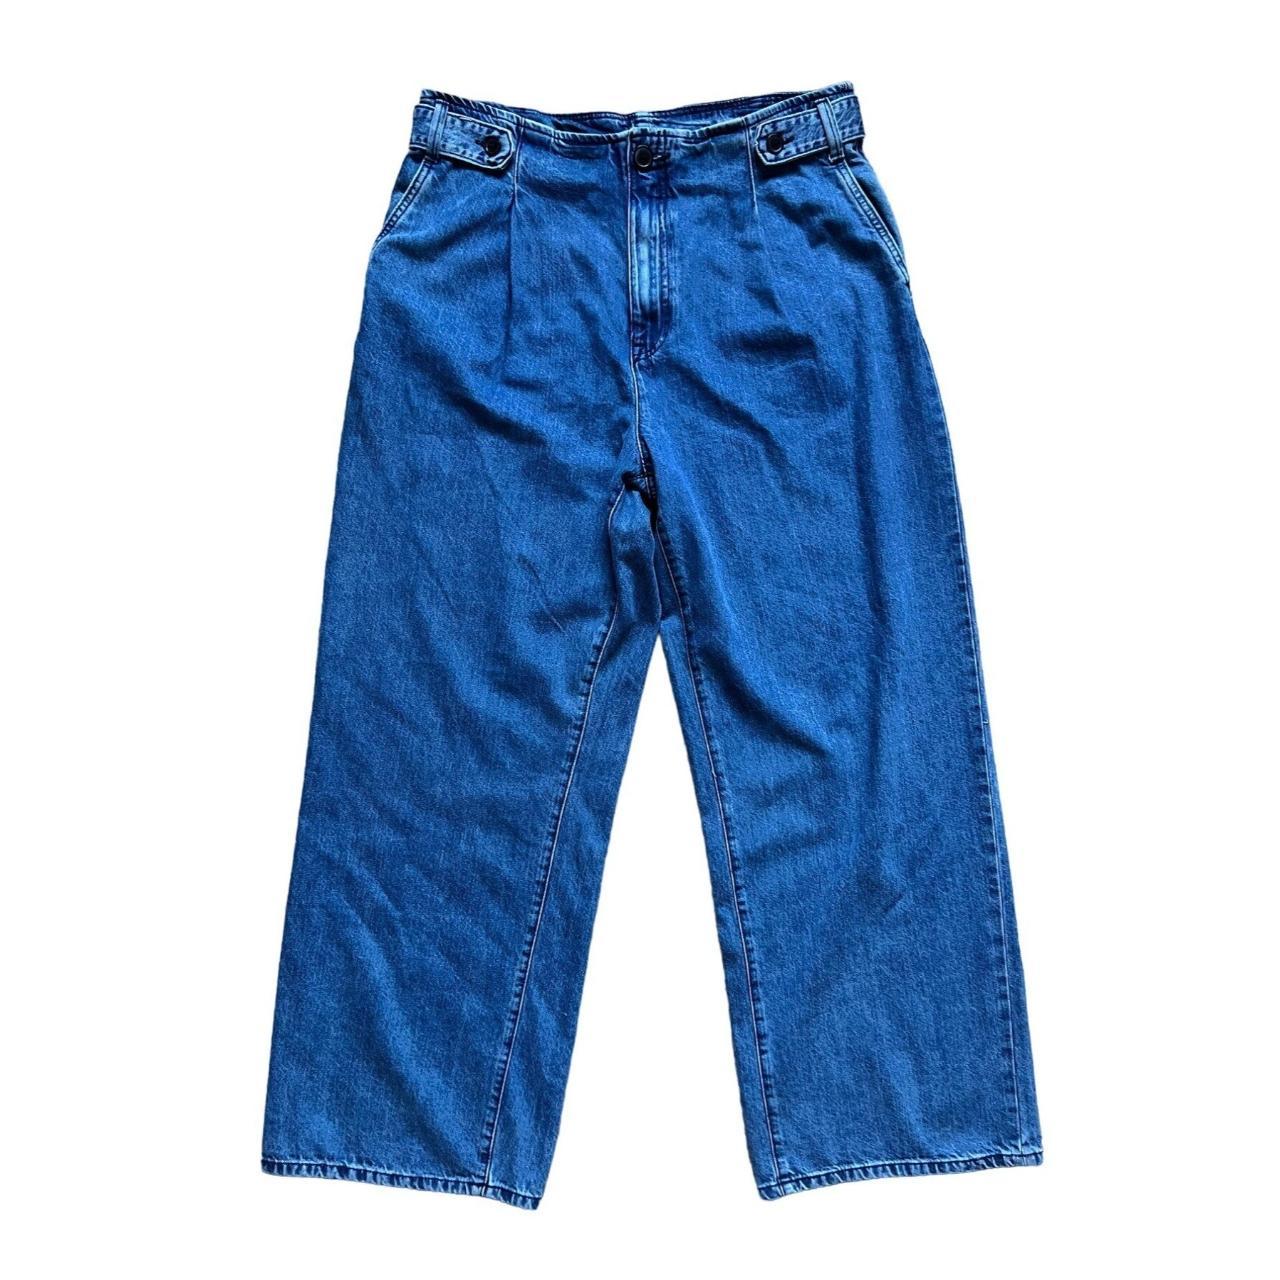 Lindex Women's Blue Jeans